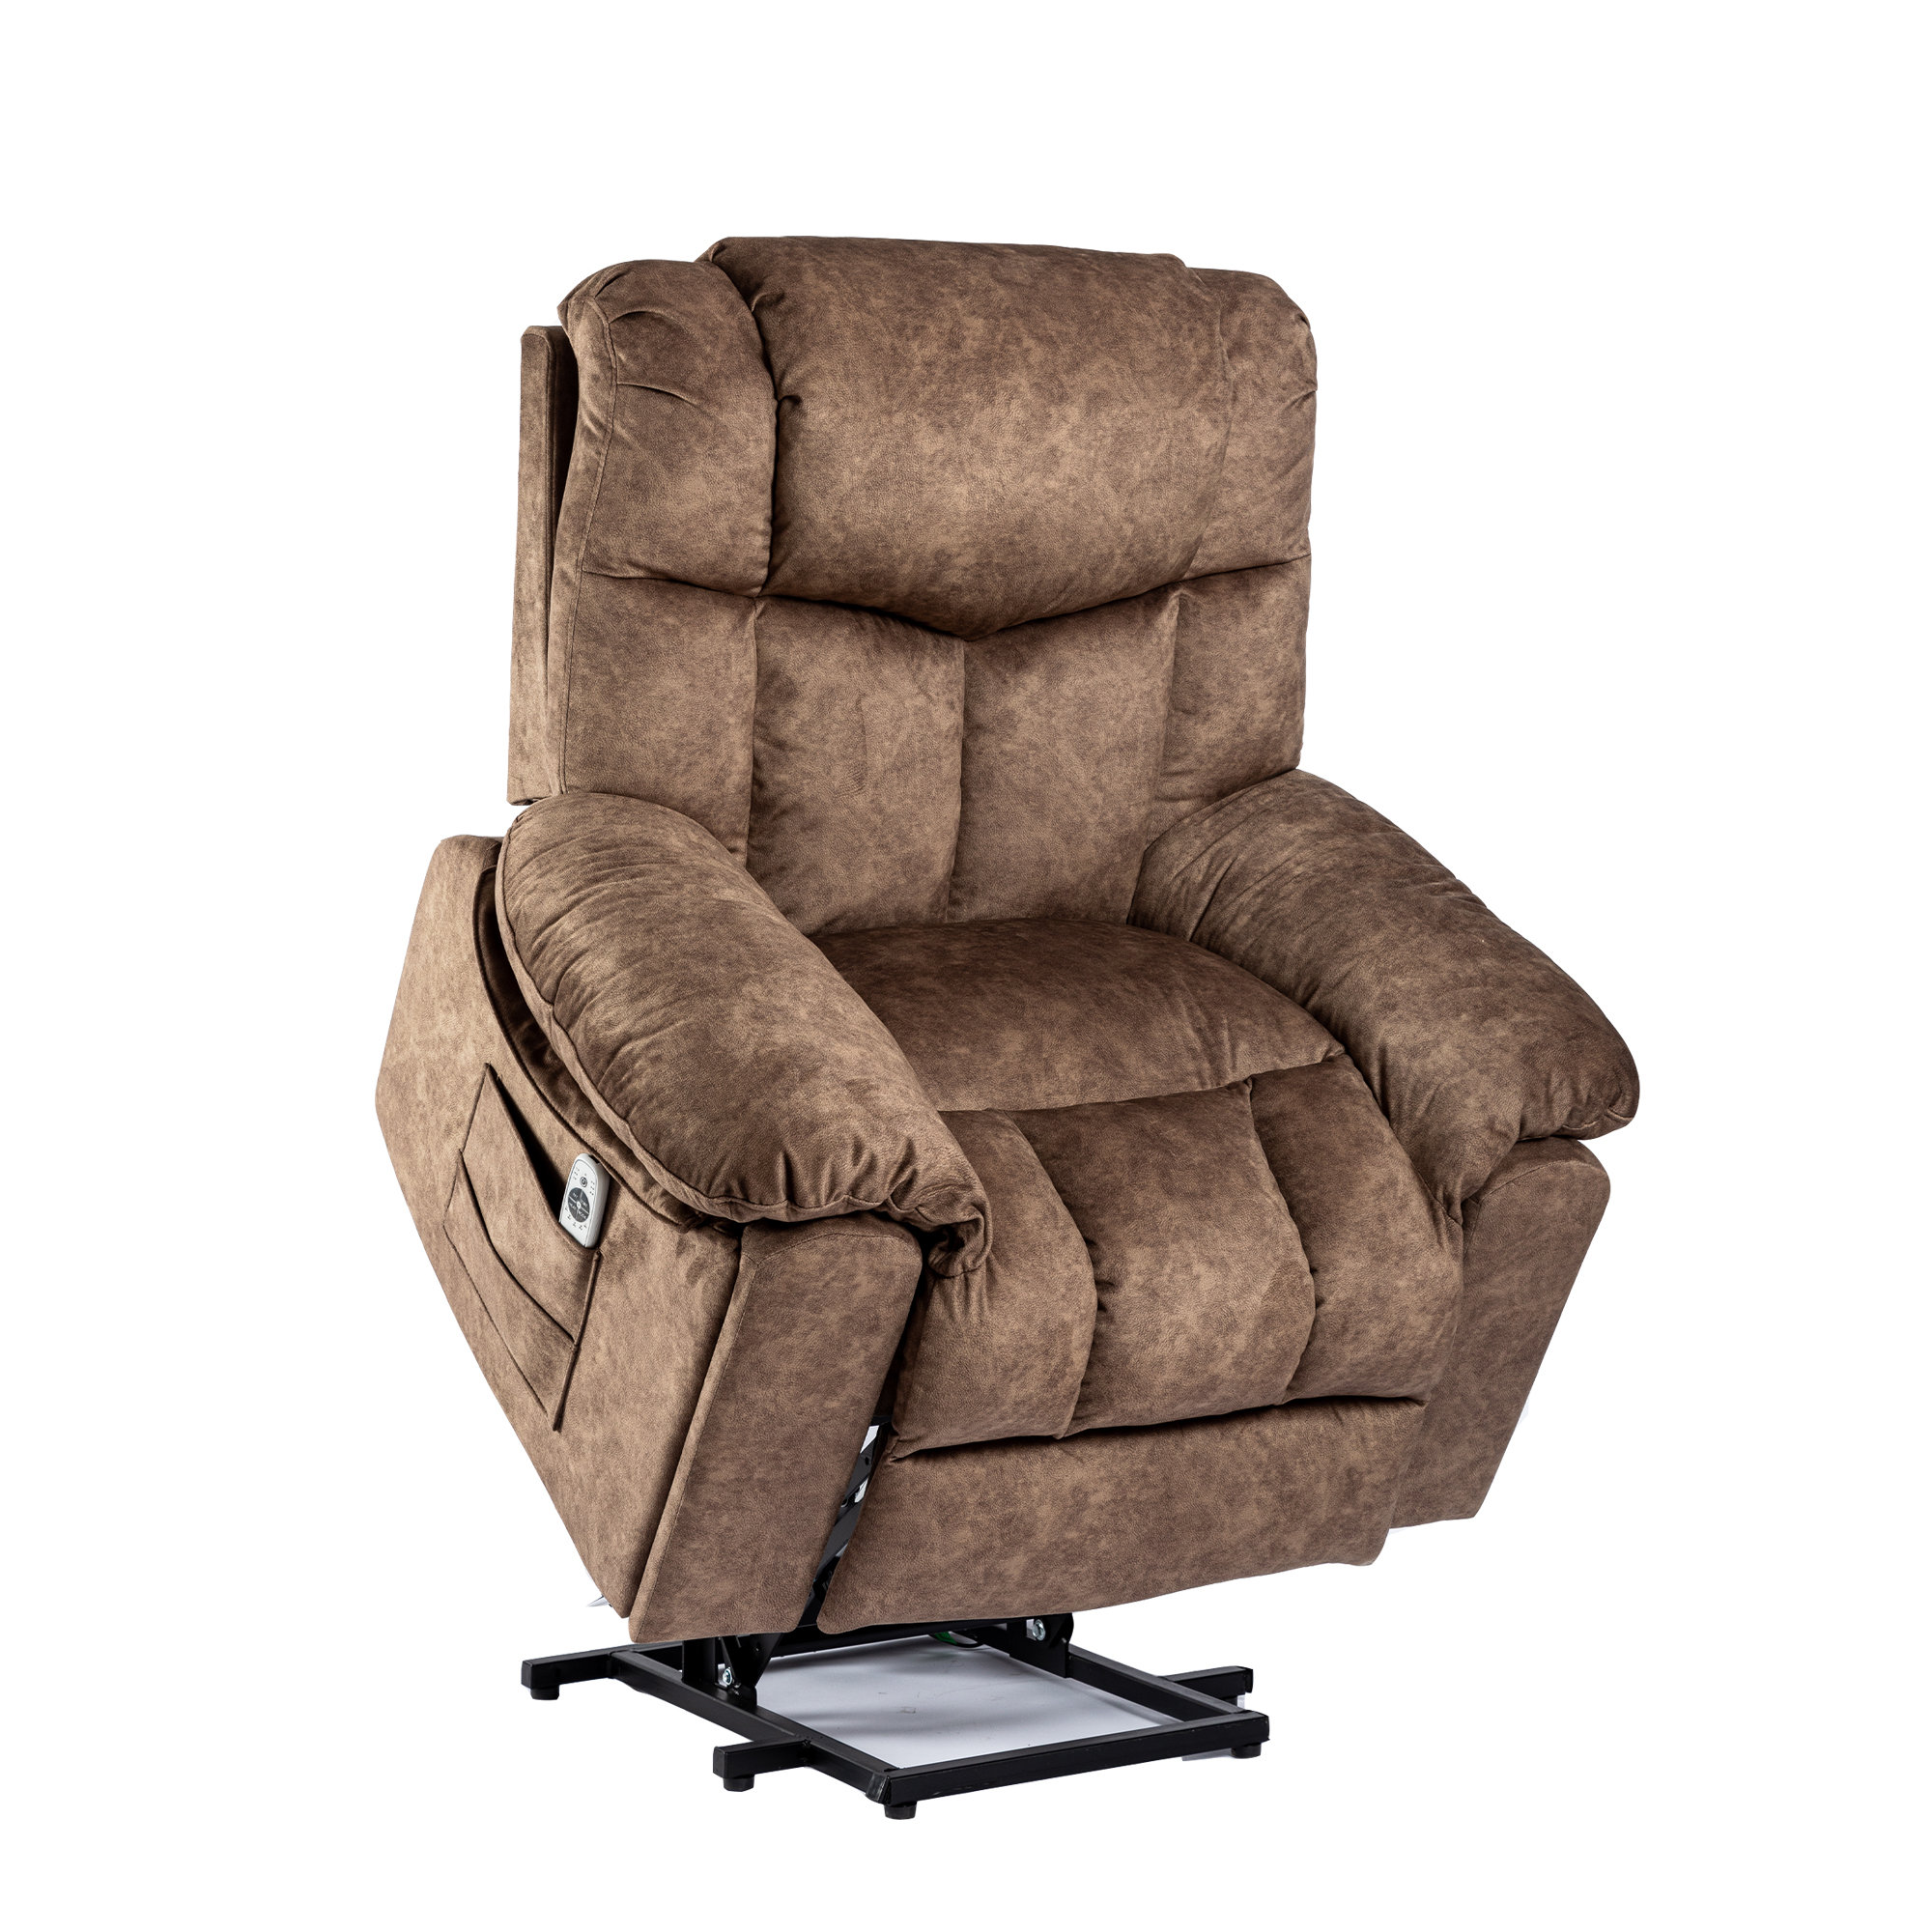 https://assets.wfcdn.com/im/75632007/compr-r85/2431/243118075/upholstered-heated-massage-chair.jpg